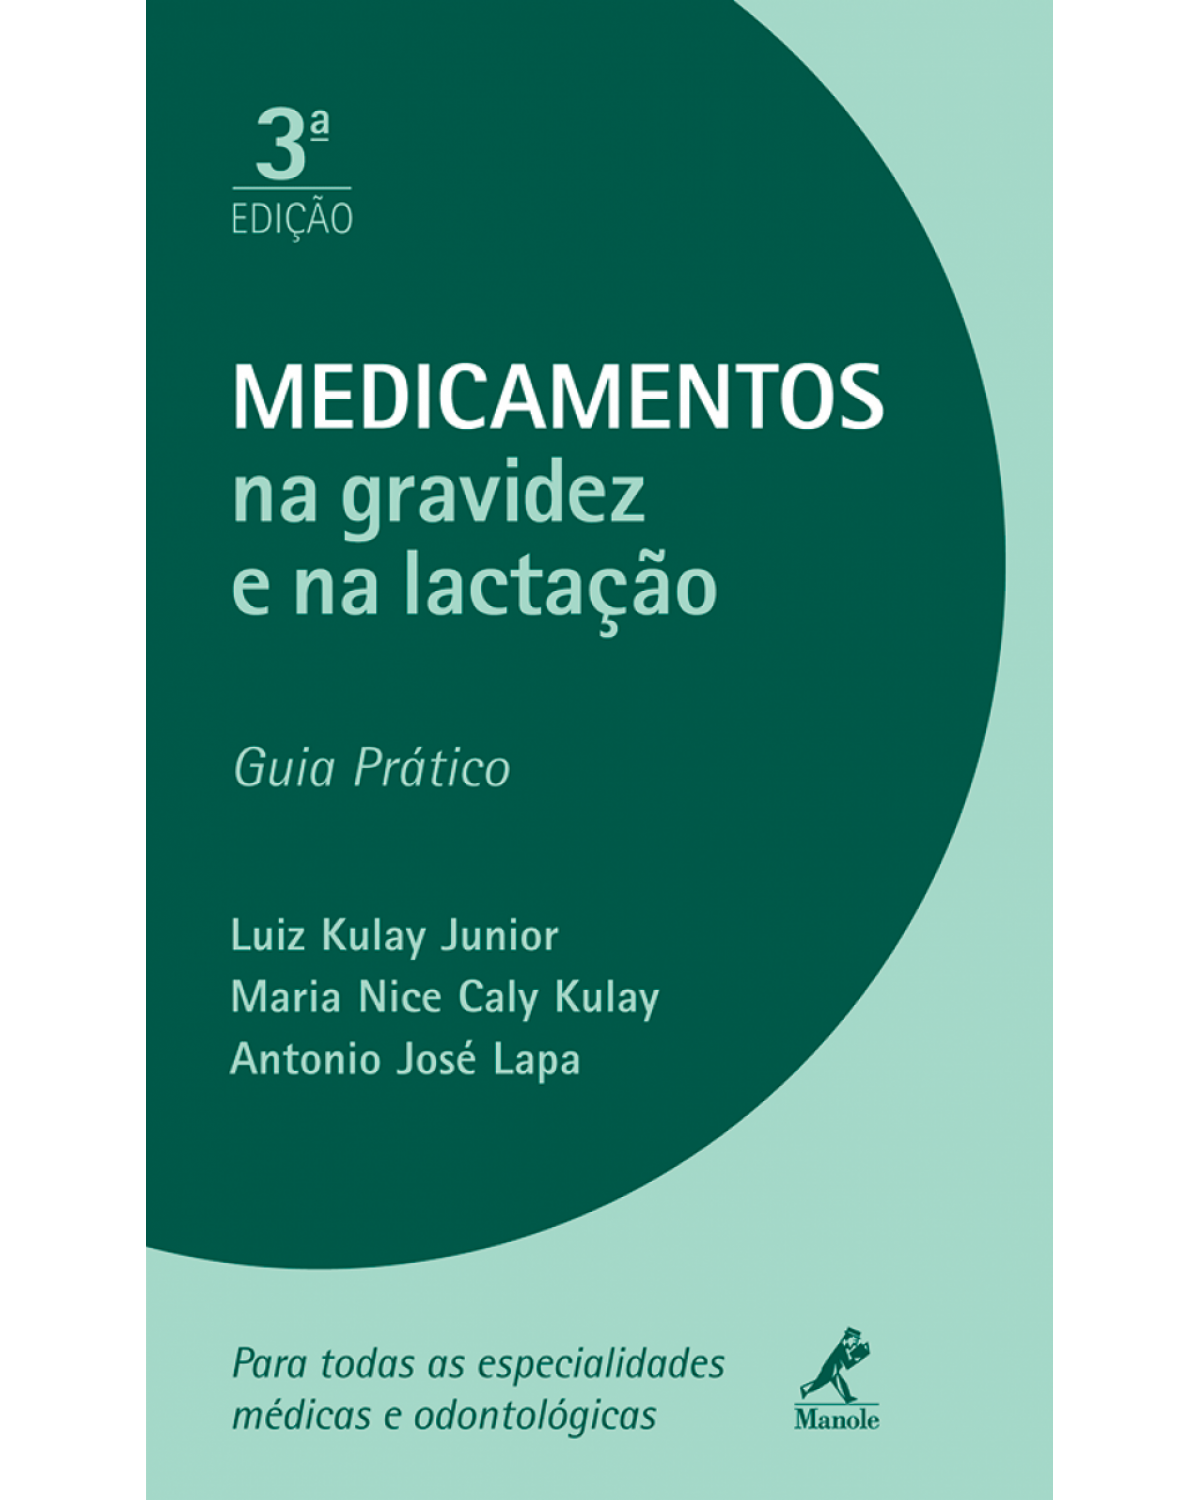 Medicamentos na gravidez e na lactação - Guia prático - 3ª Edição | 2012